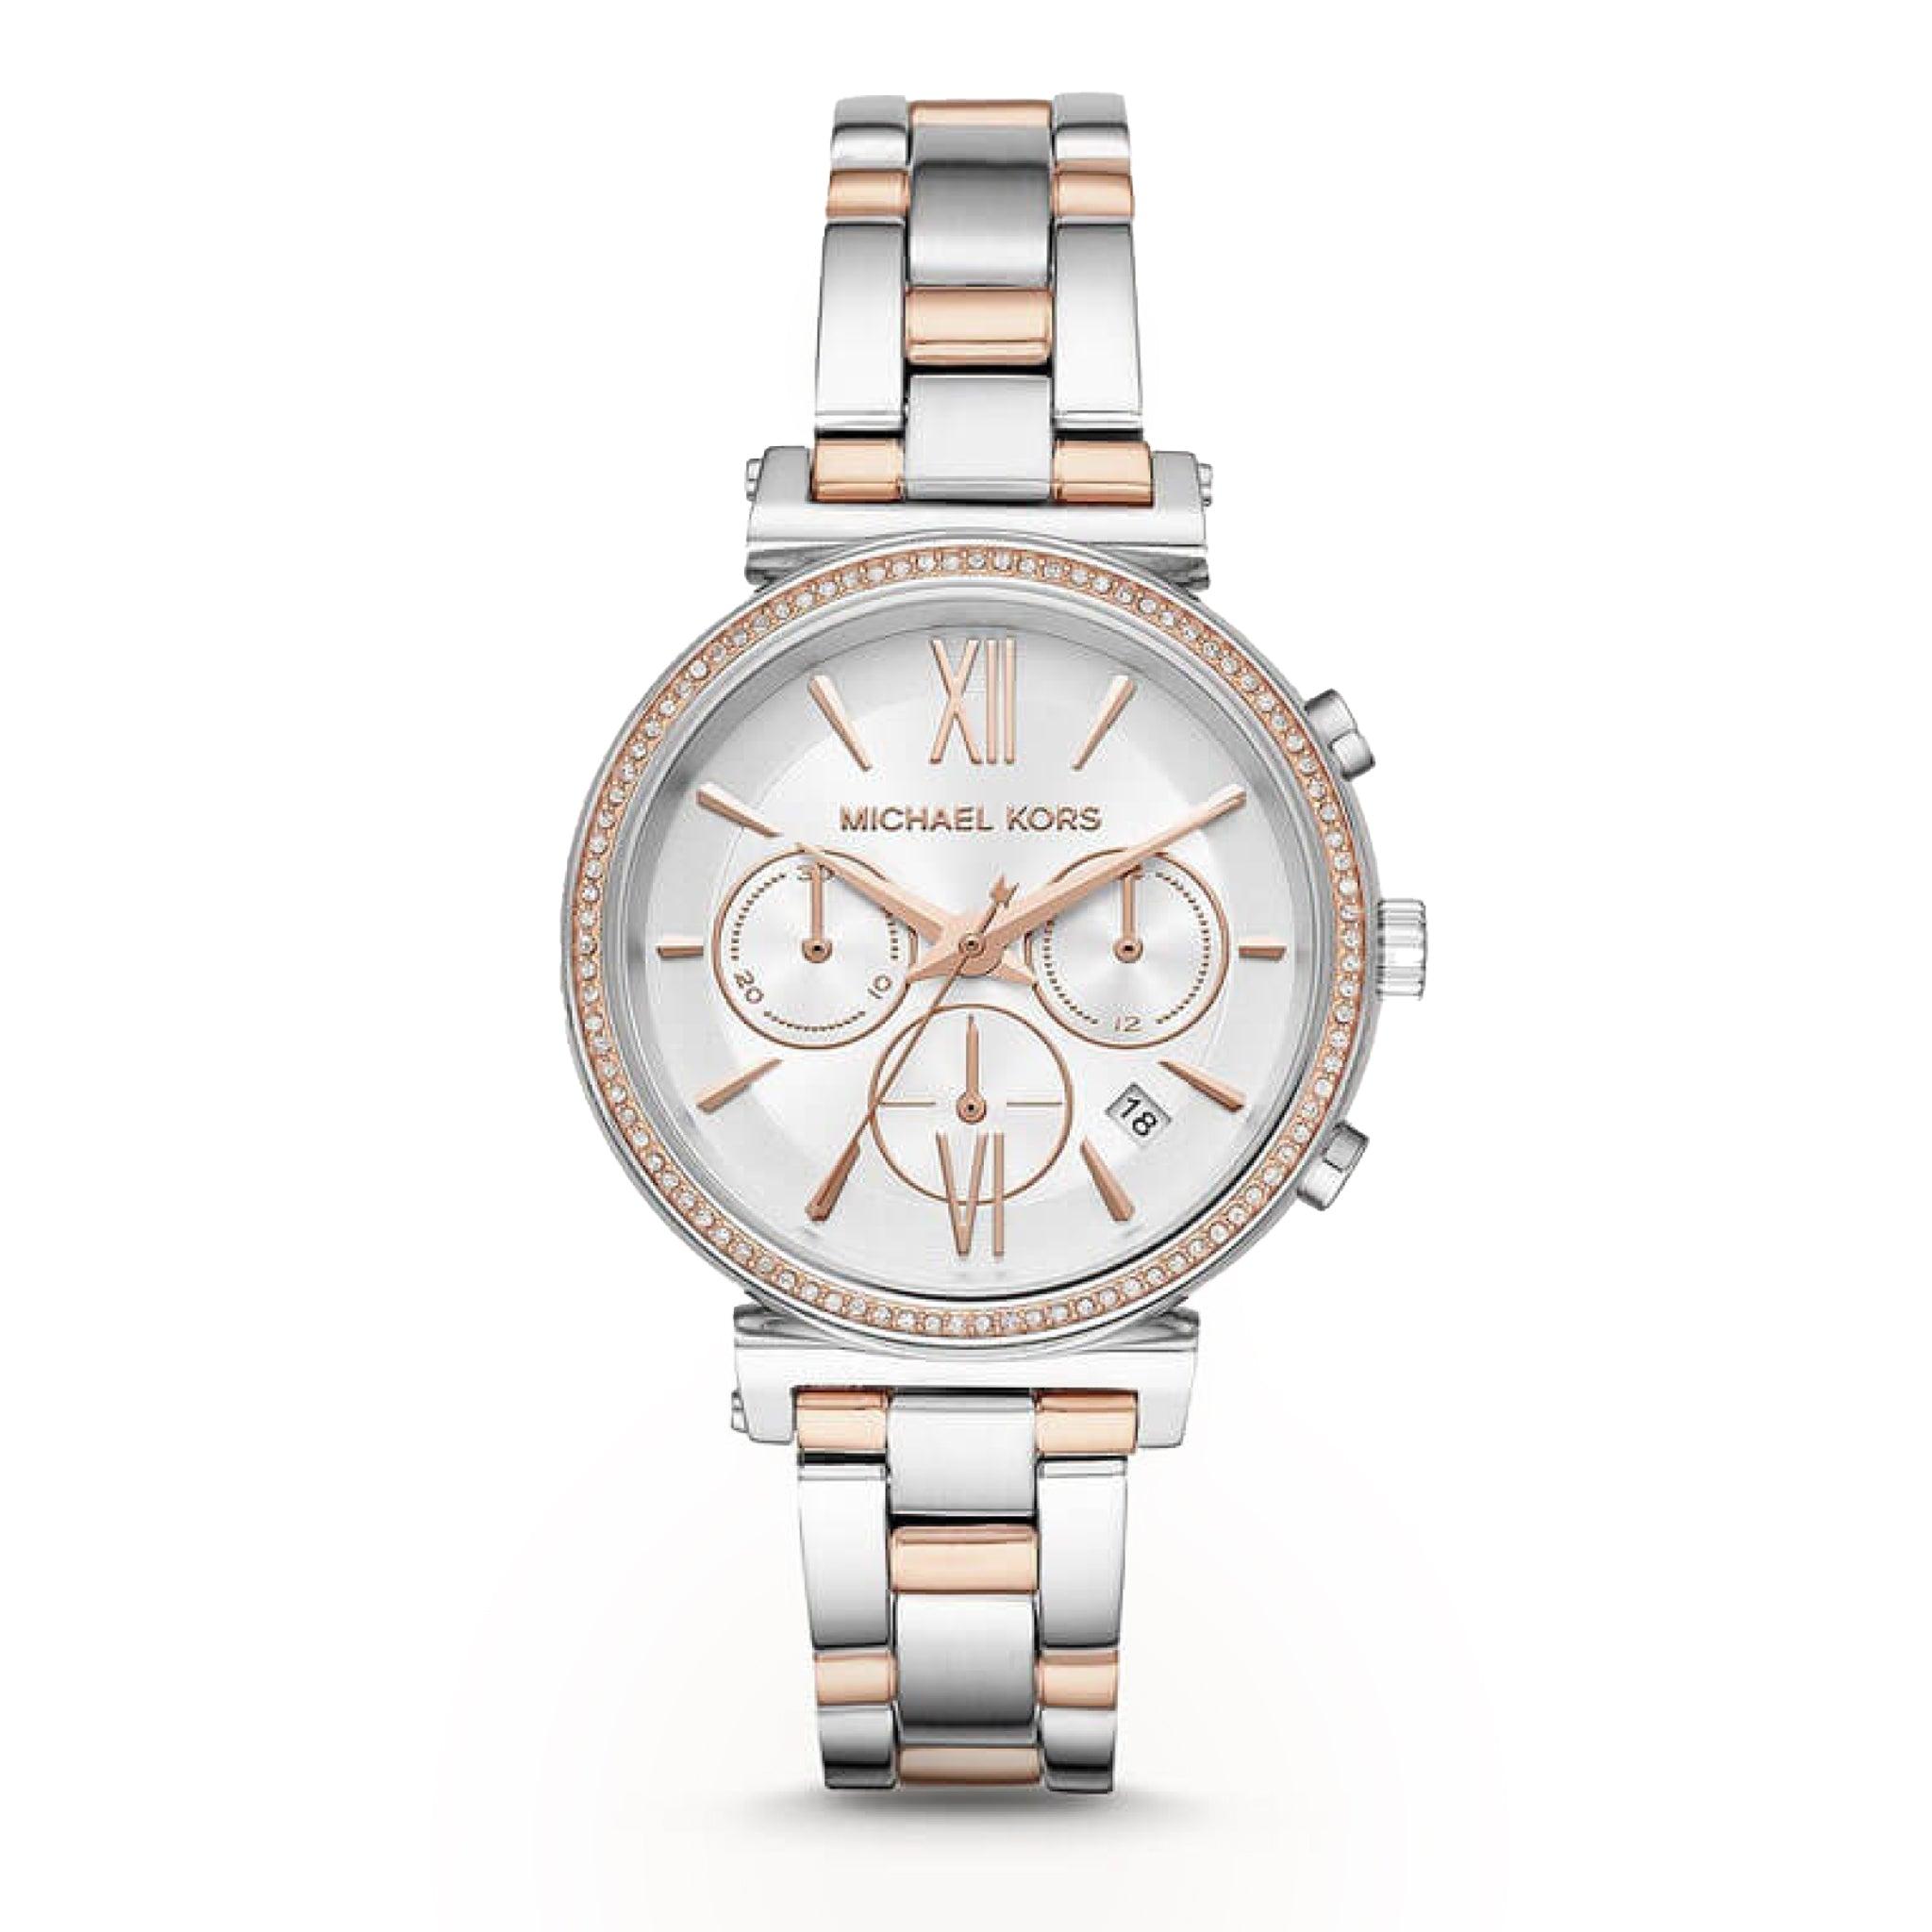 ساعة مايكل كورس كوارتز للنساء ستانلس ستيل بمينا أبيض Michael Kors Women's Quartz Stainless Steel White Dial 39mm Watch Mk6558